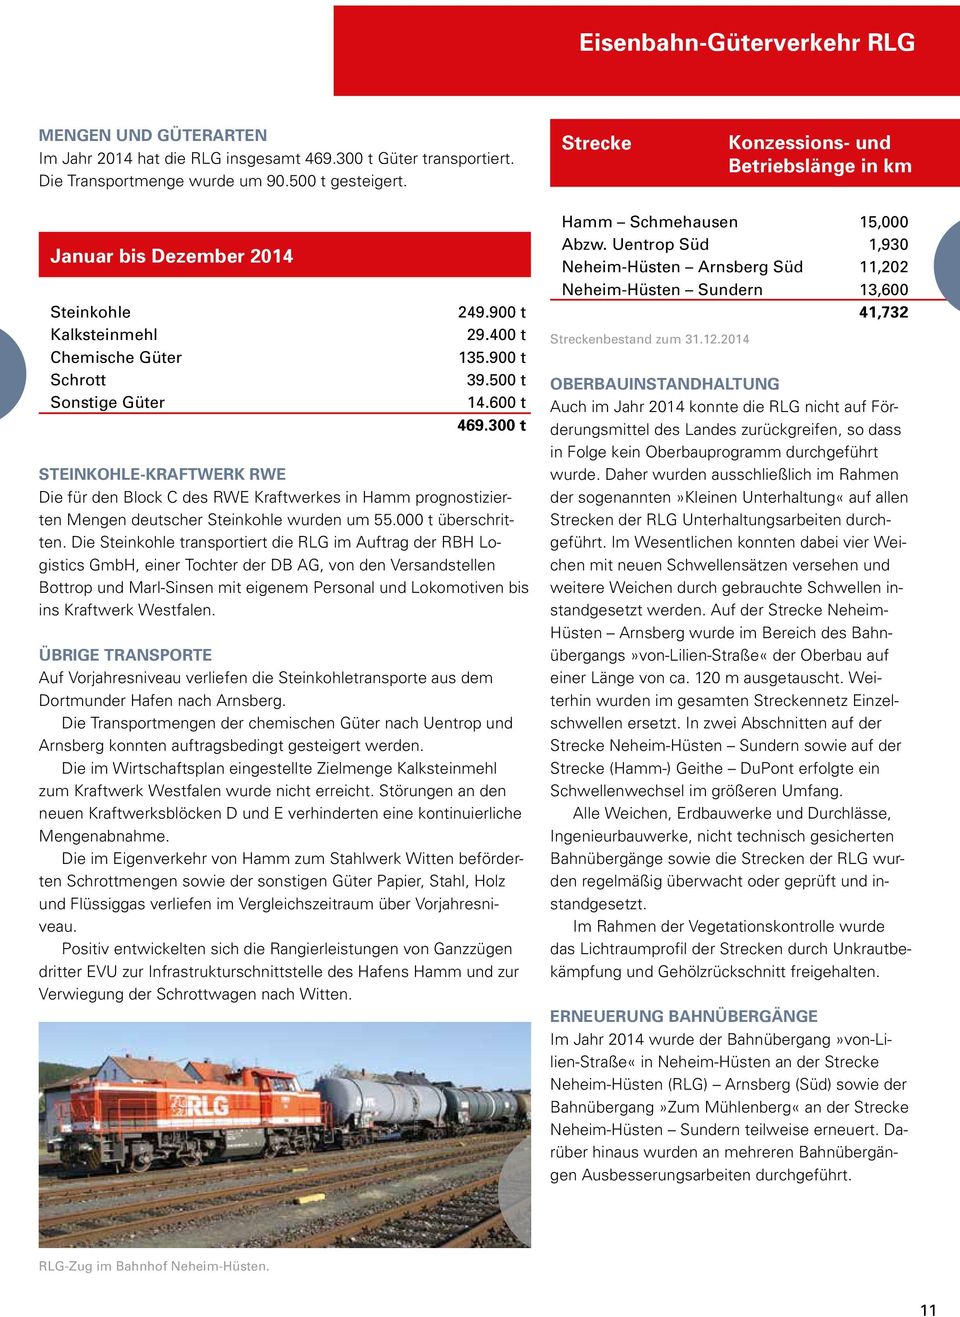 300 t STEINKOHLE-KRAFTWERK RWE Die für den Block C des RWE Kraftwerkes in Hamm prognostizierten Mengen deutscher Steinkohle wurden um 55.000 t überschritten.